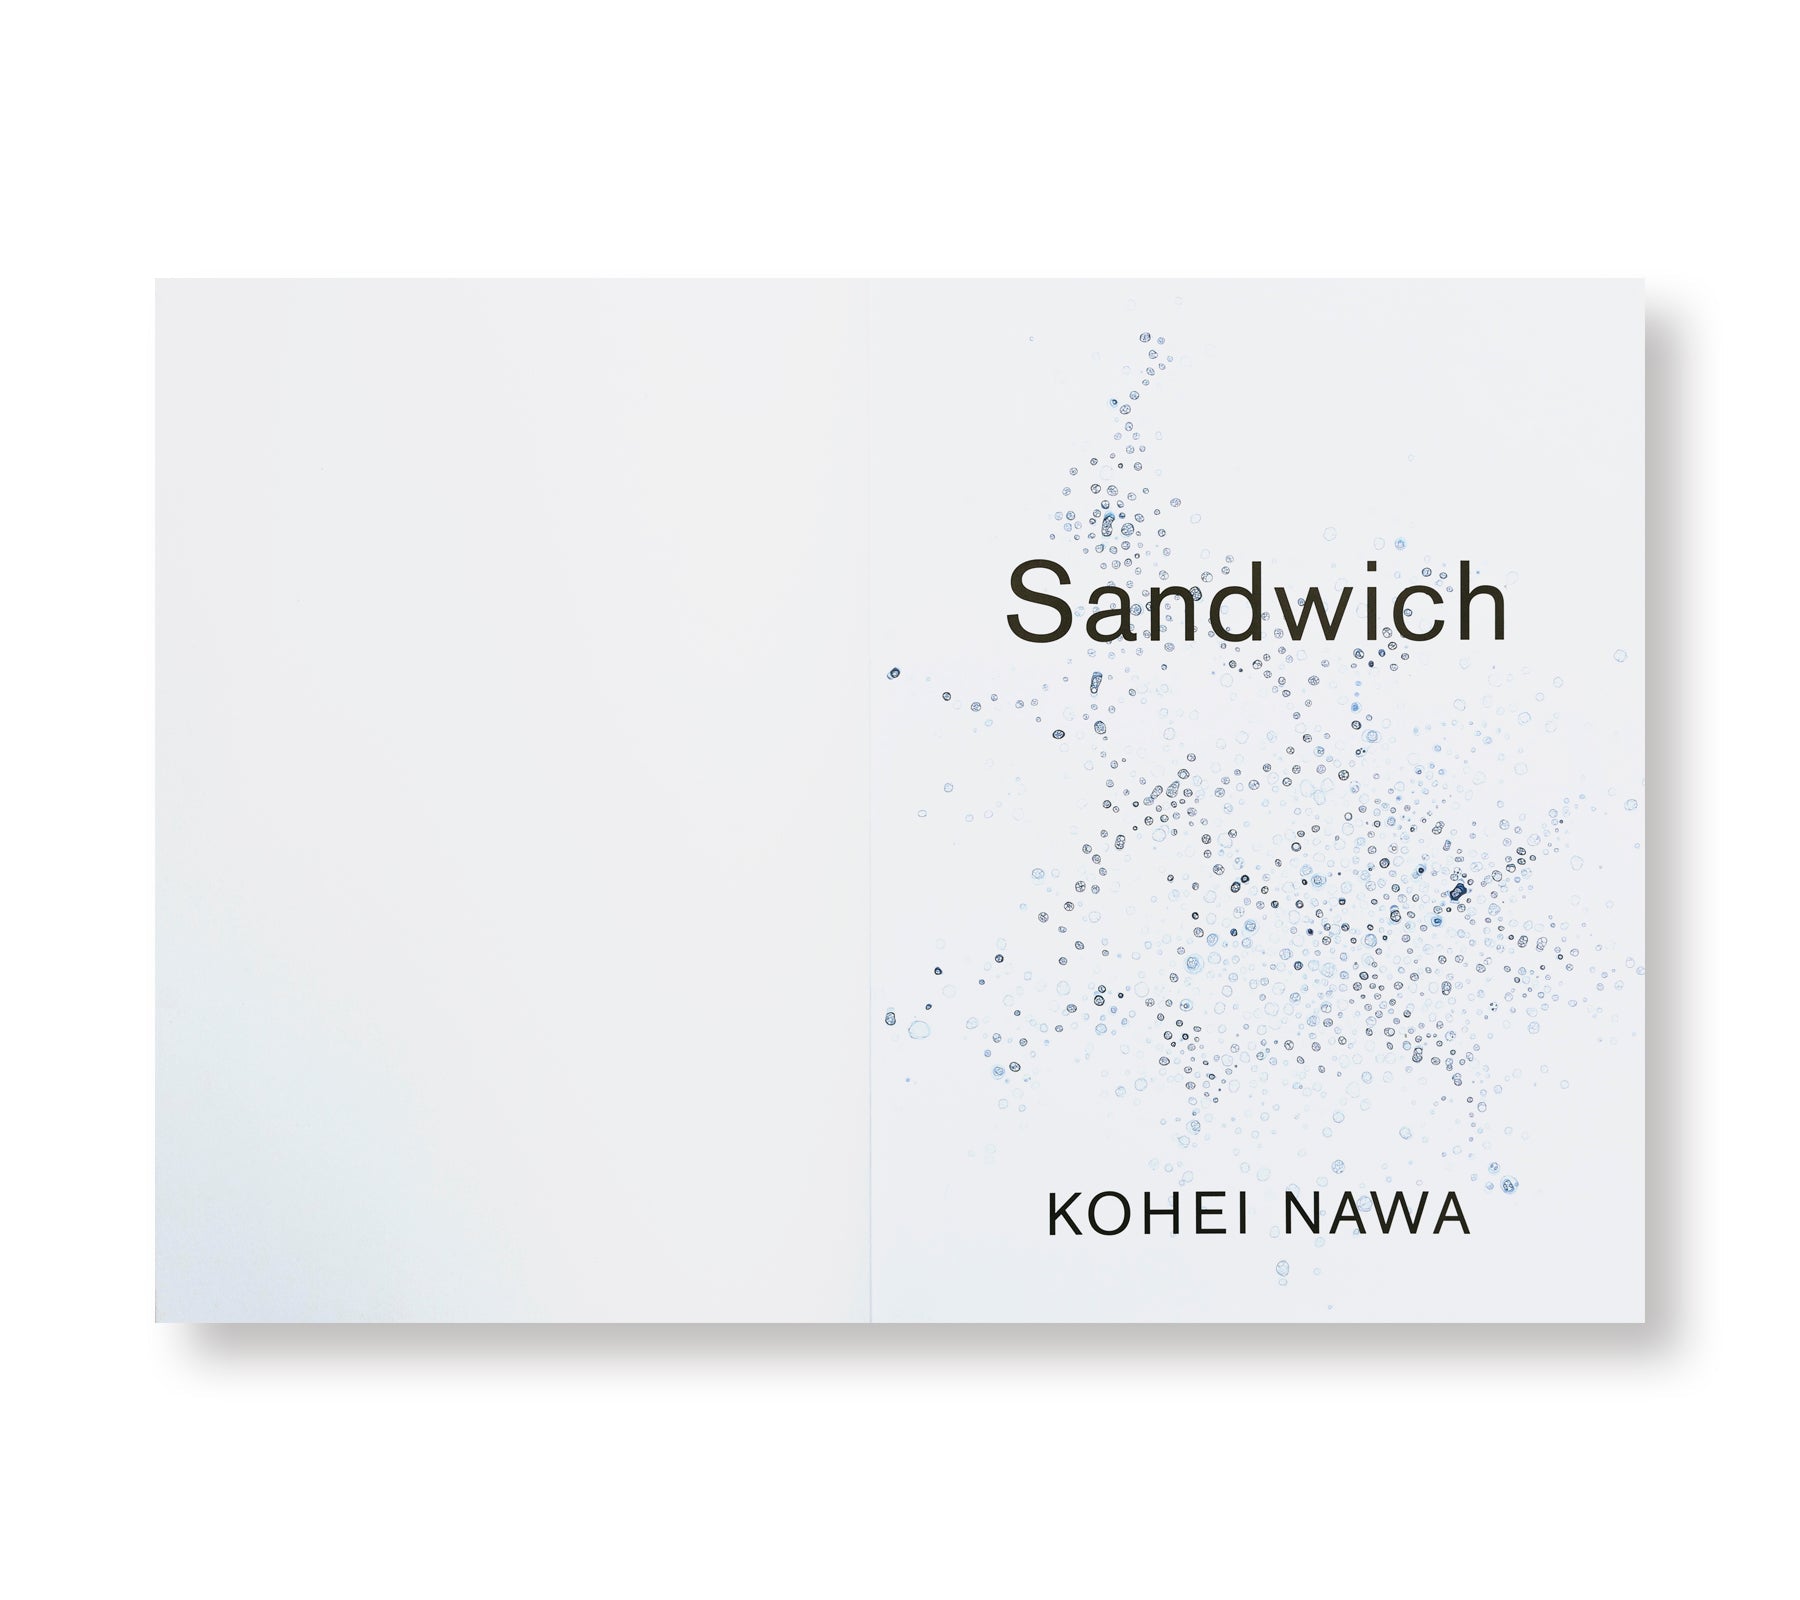 SANDWICH by Kohei Nawa [SIGNED]